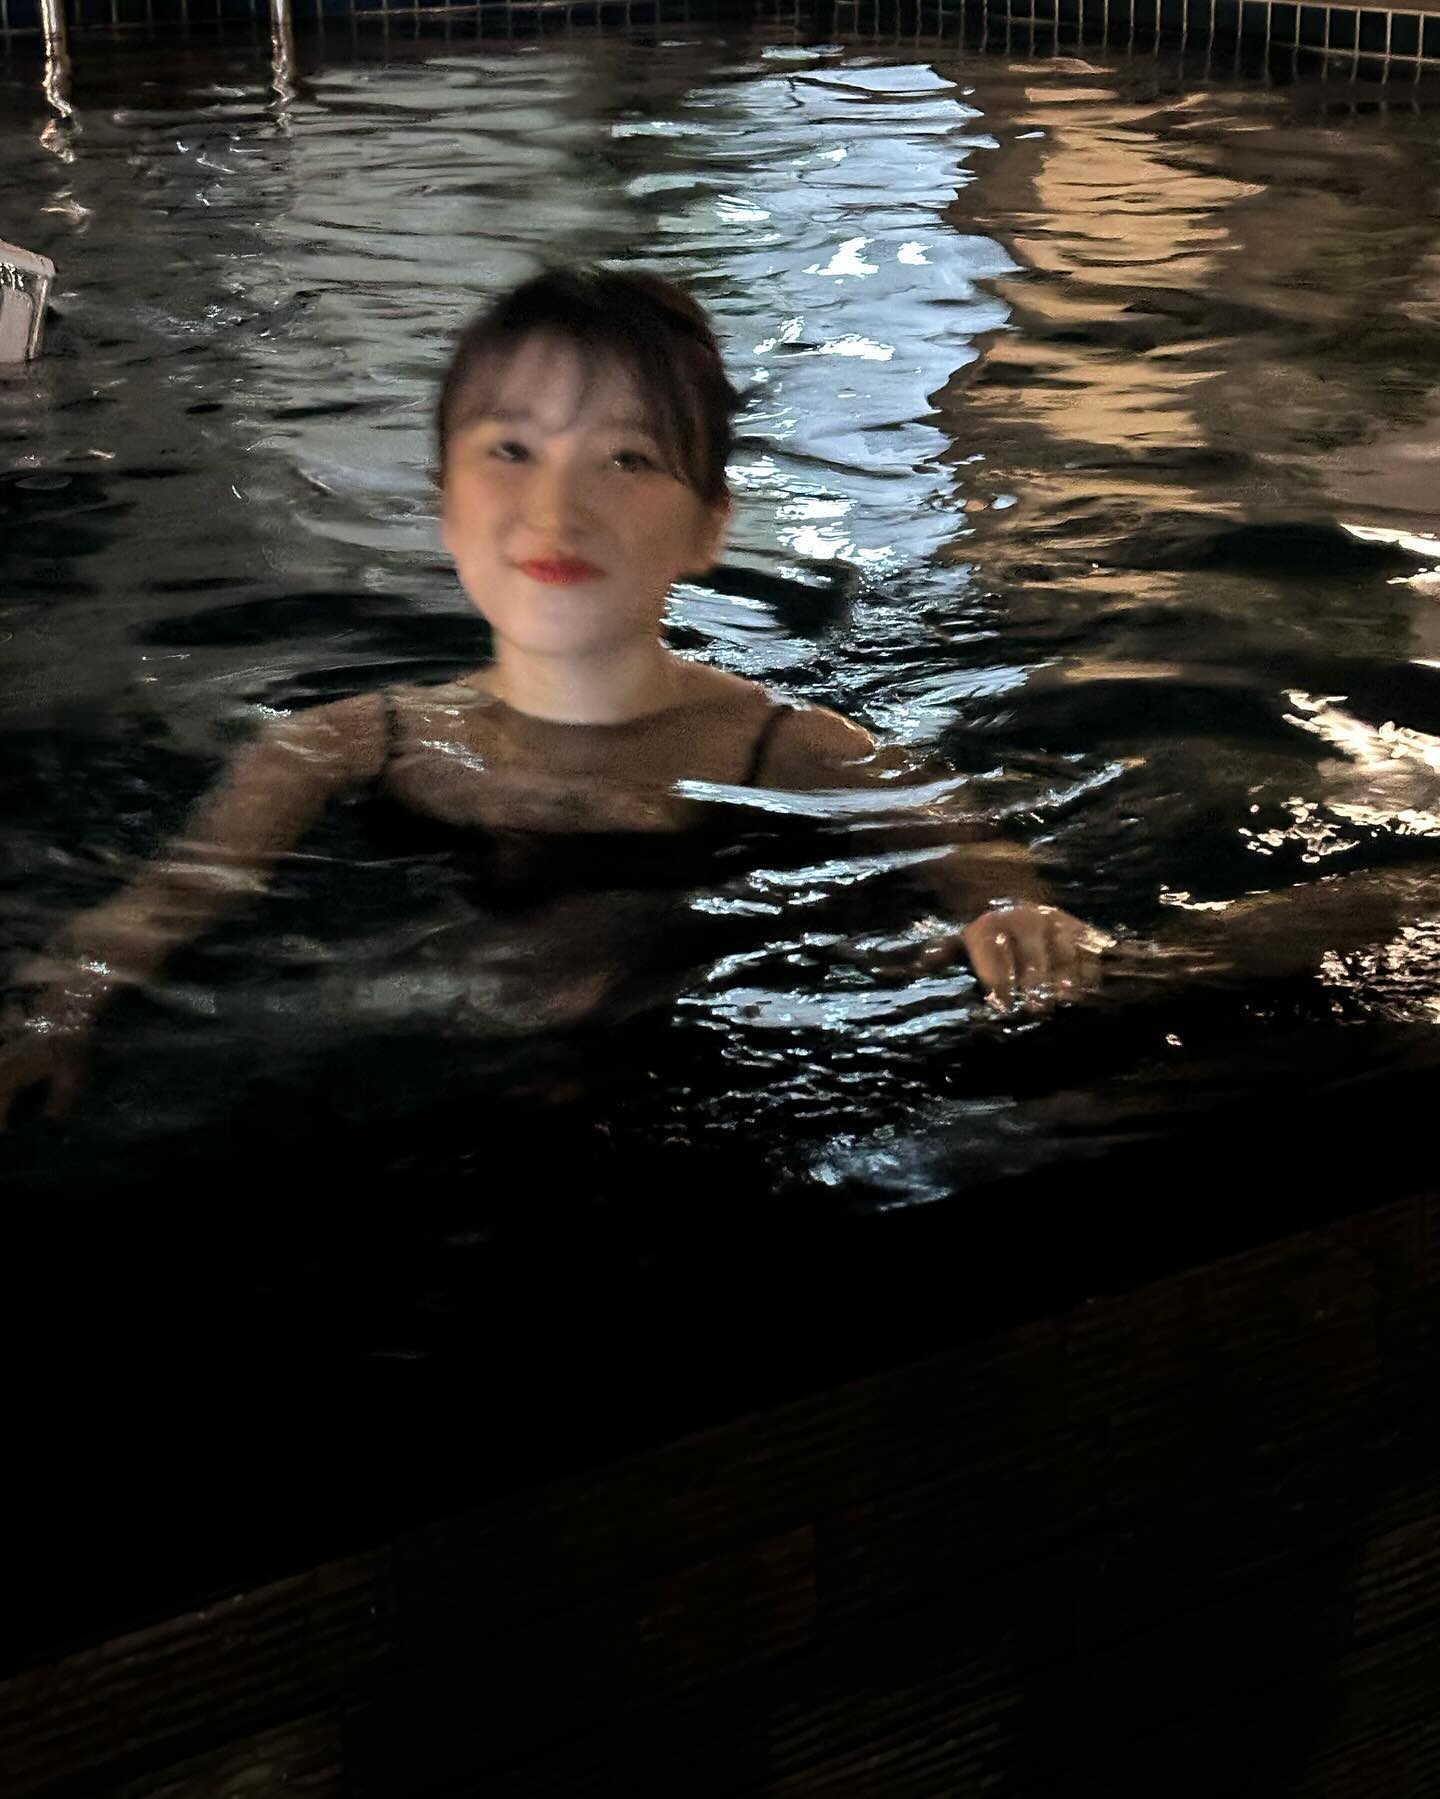 IZ*ONEホテルのプールで水着を着た奈子 - ウンビチェヨンのコメント